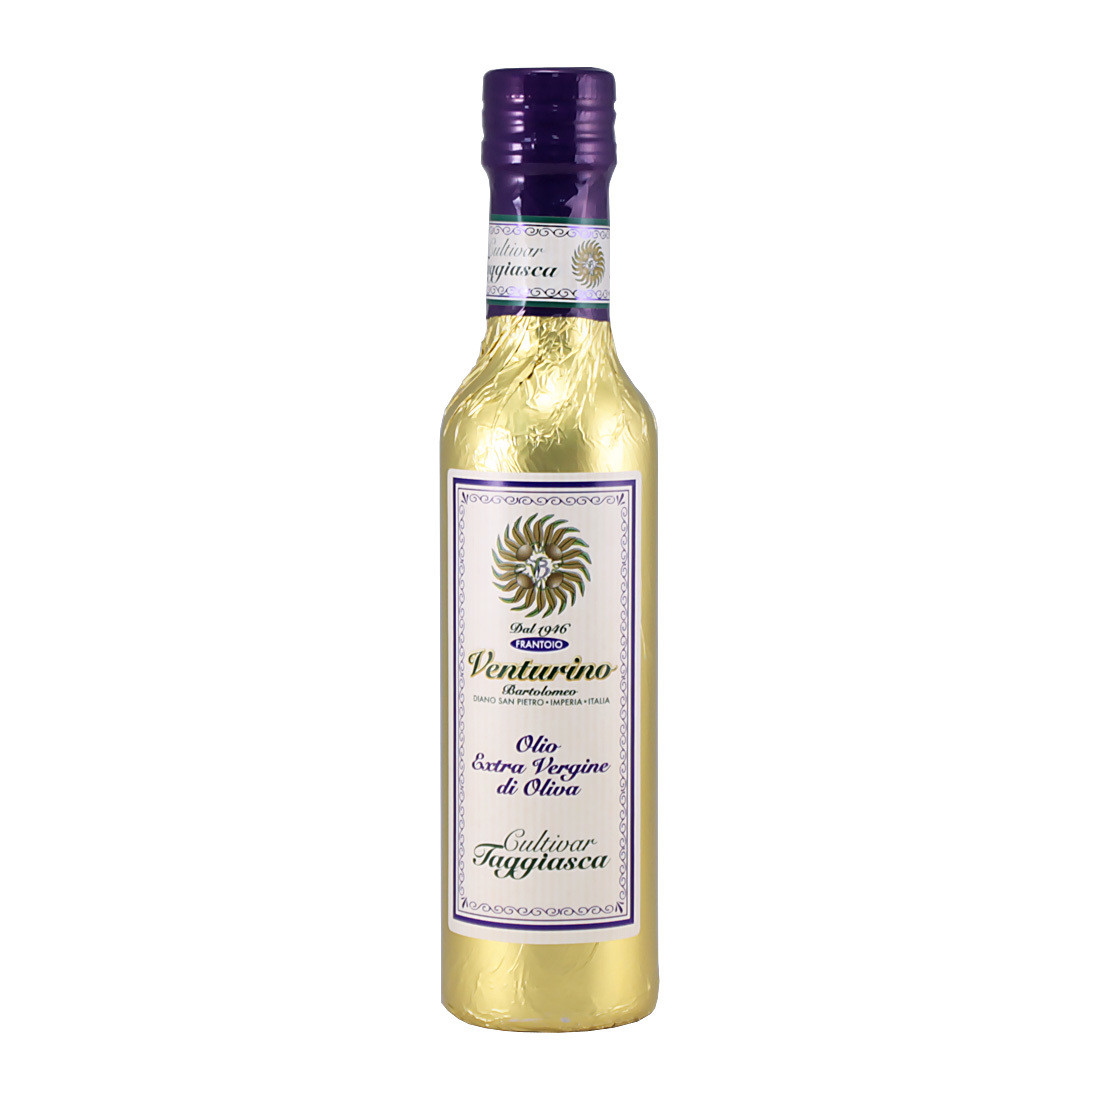 Масло оливковое э/в из оливок Таджиаски, ВЕНТУРИНО, золотая фольга 250мл